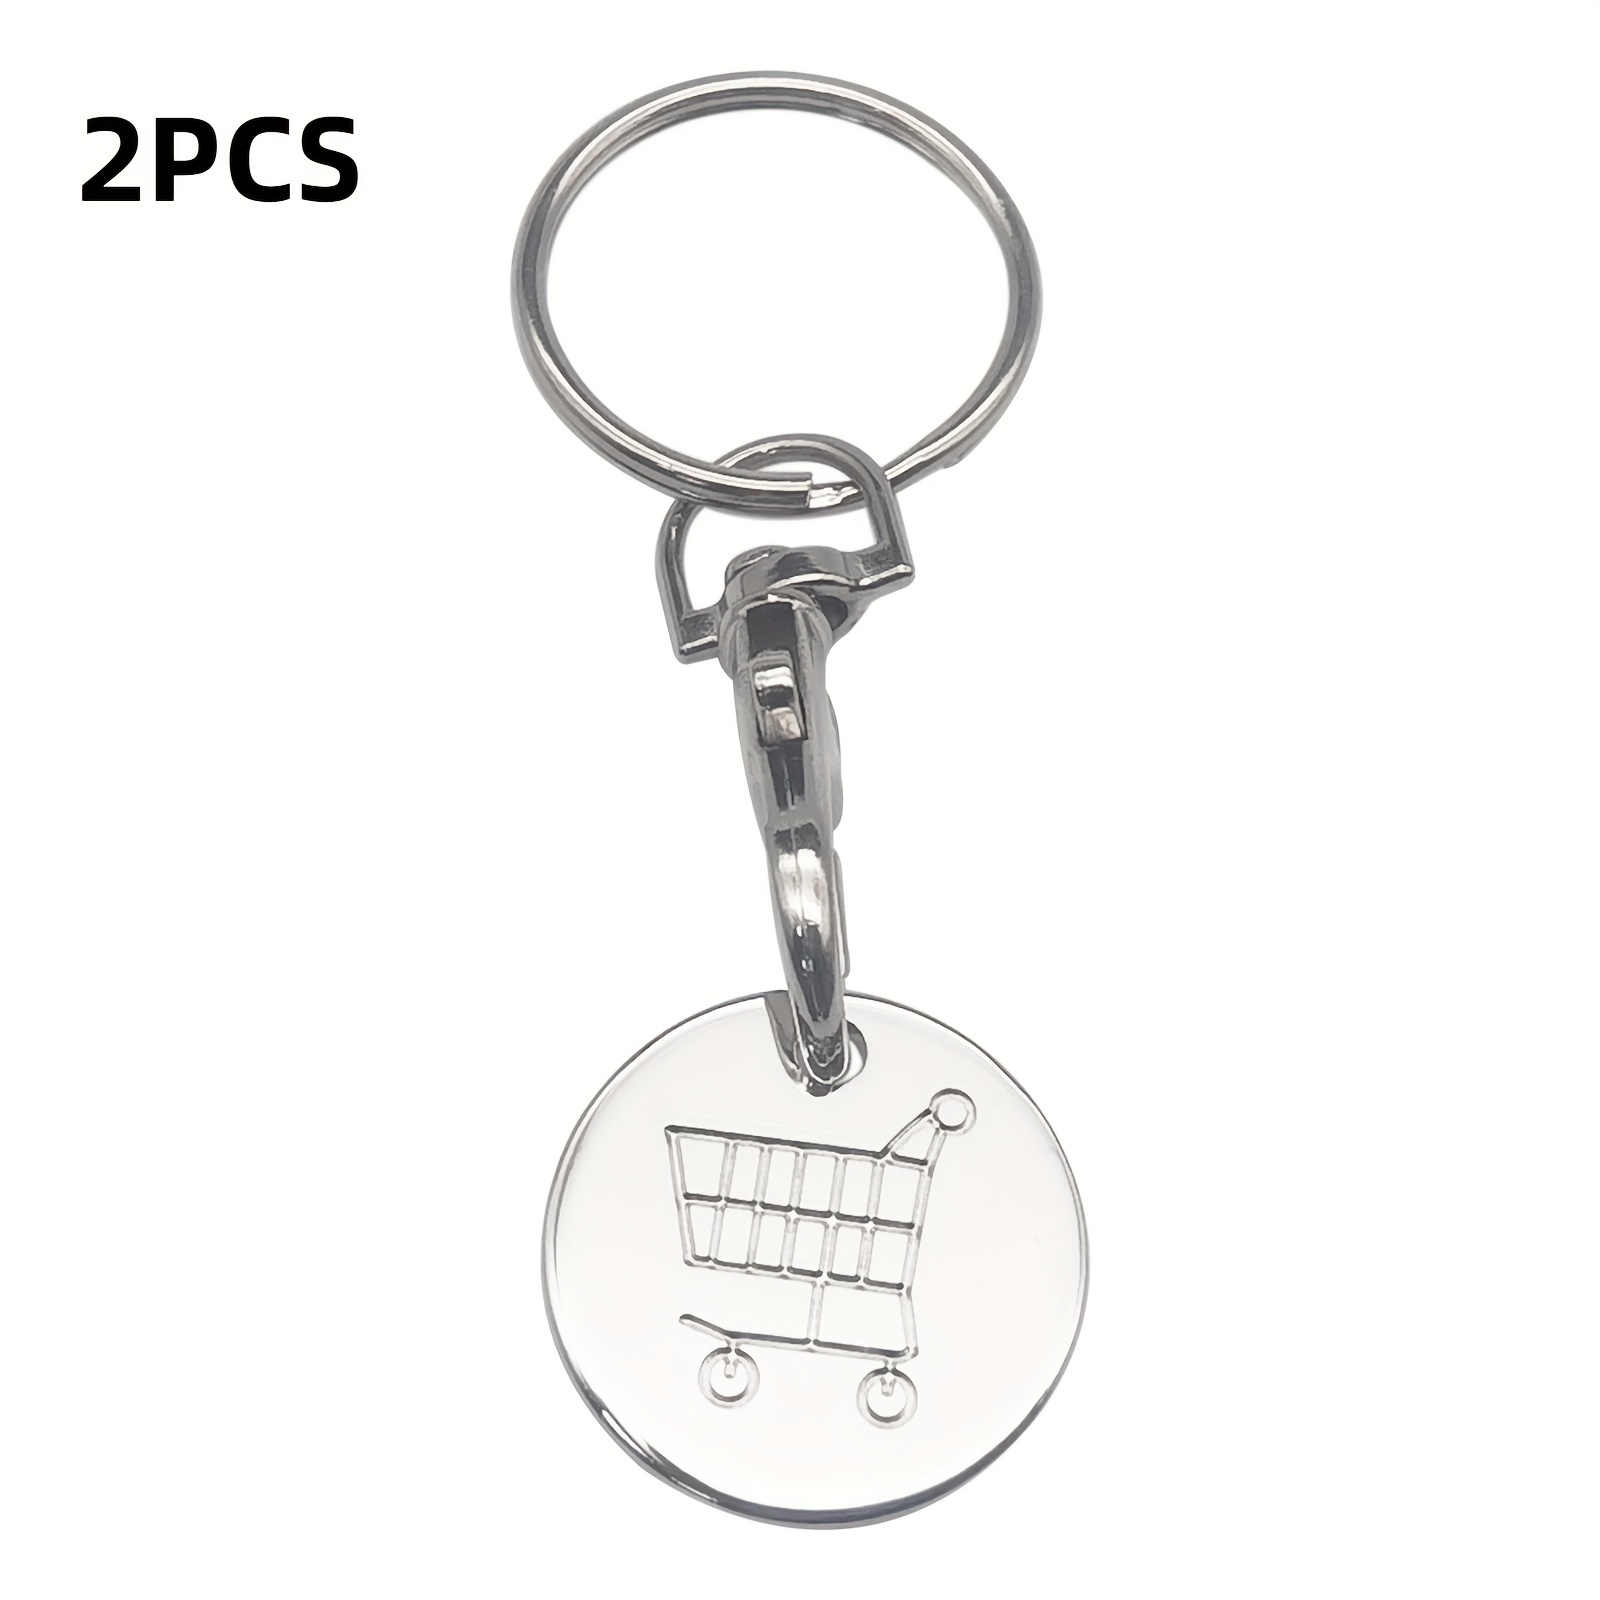 2PCSmini keychains keychain holder holder